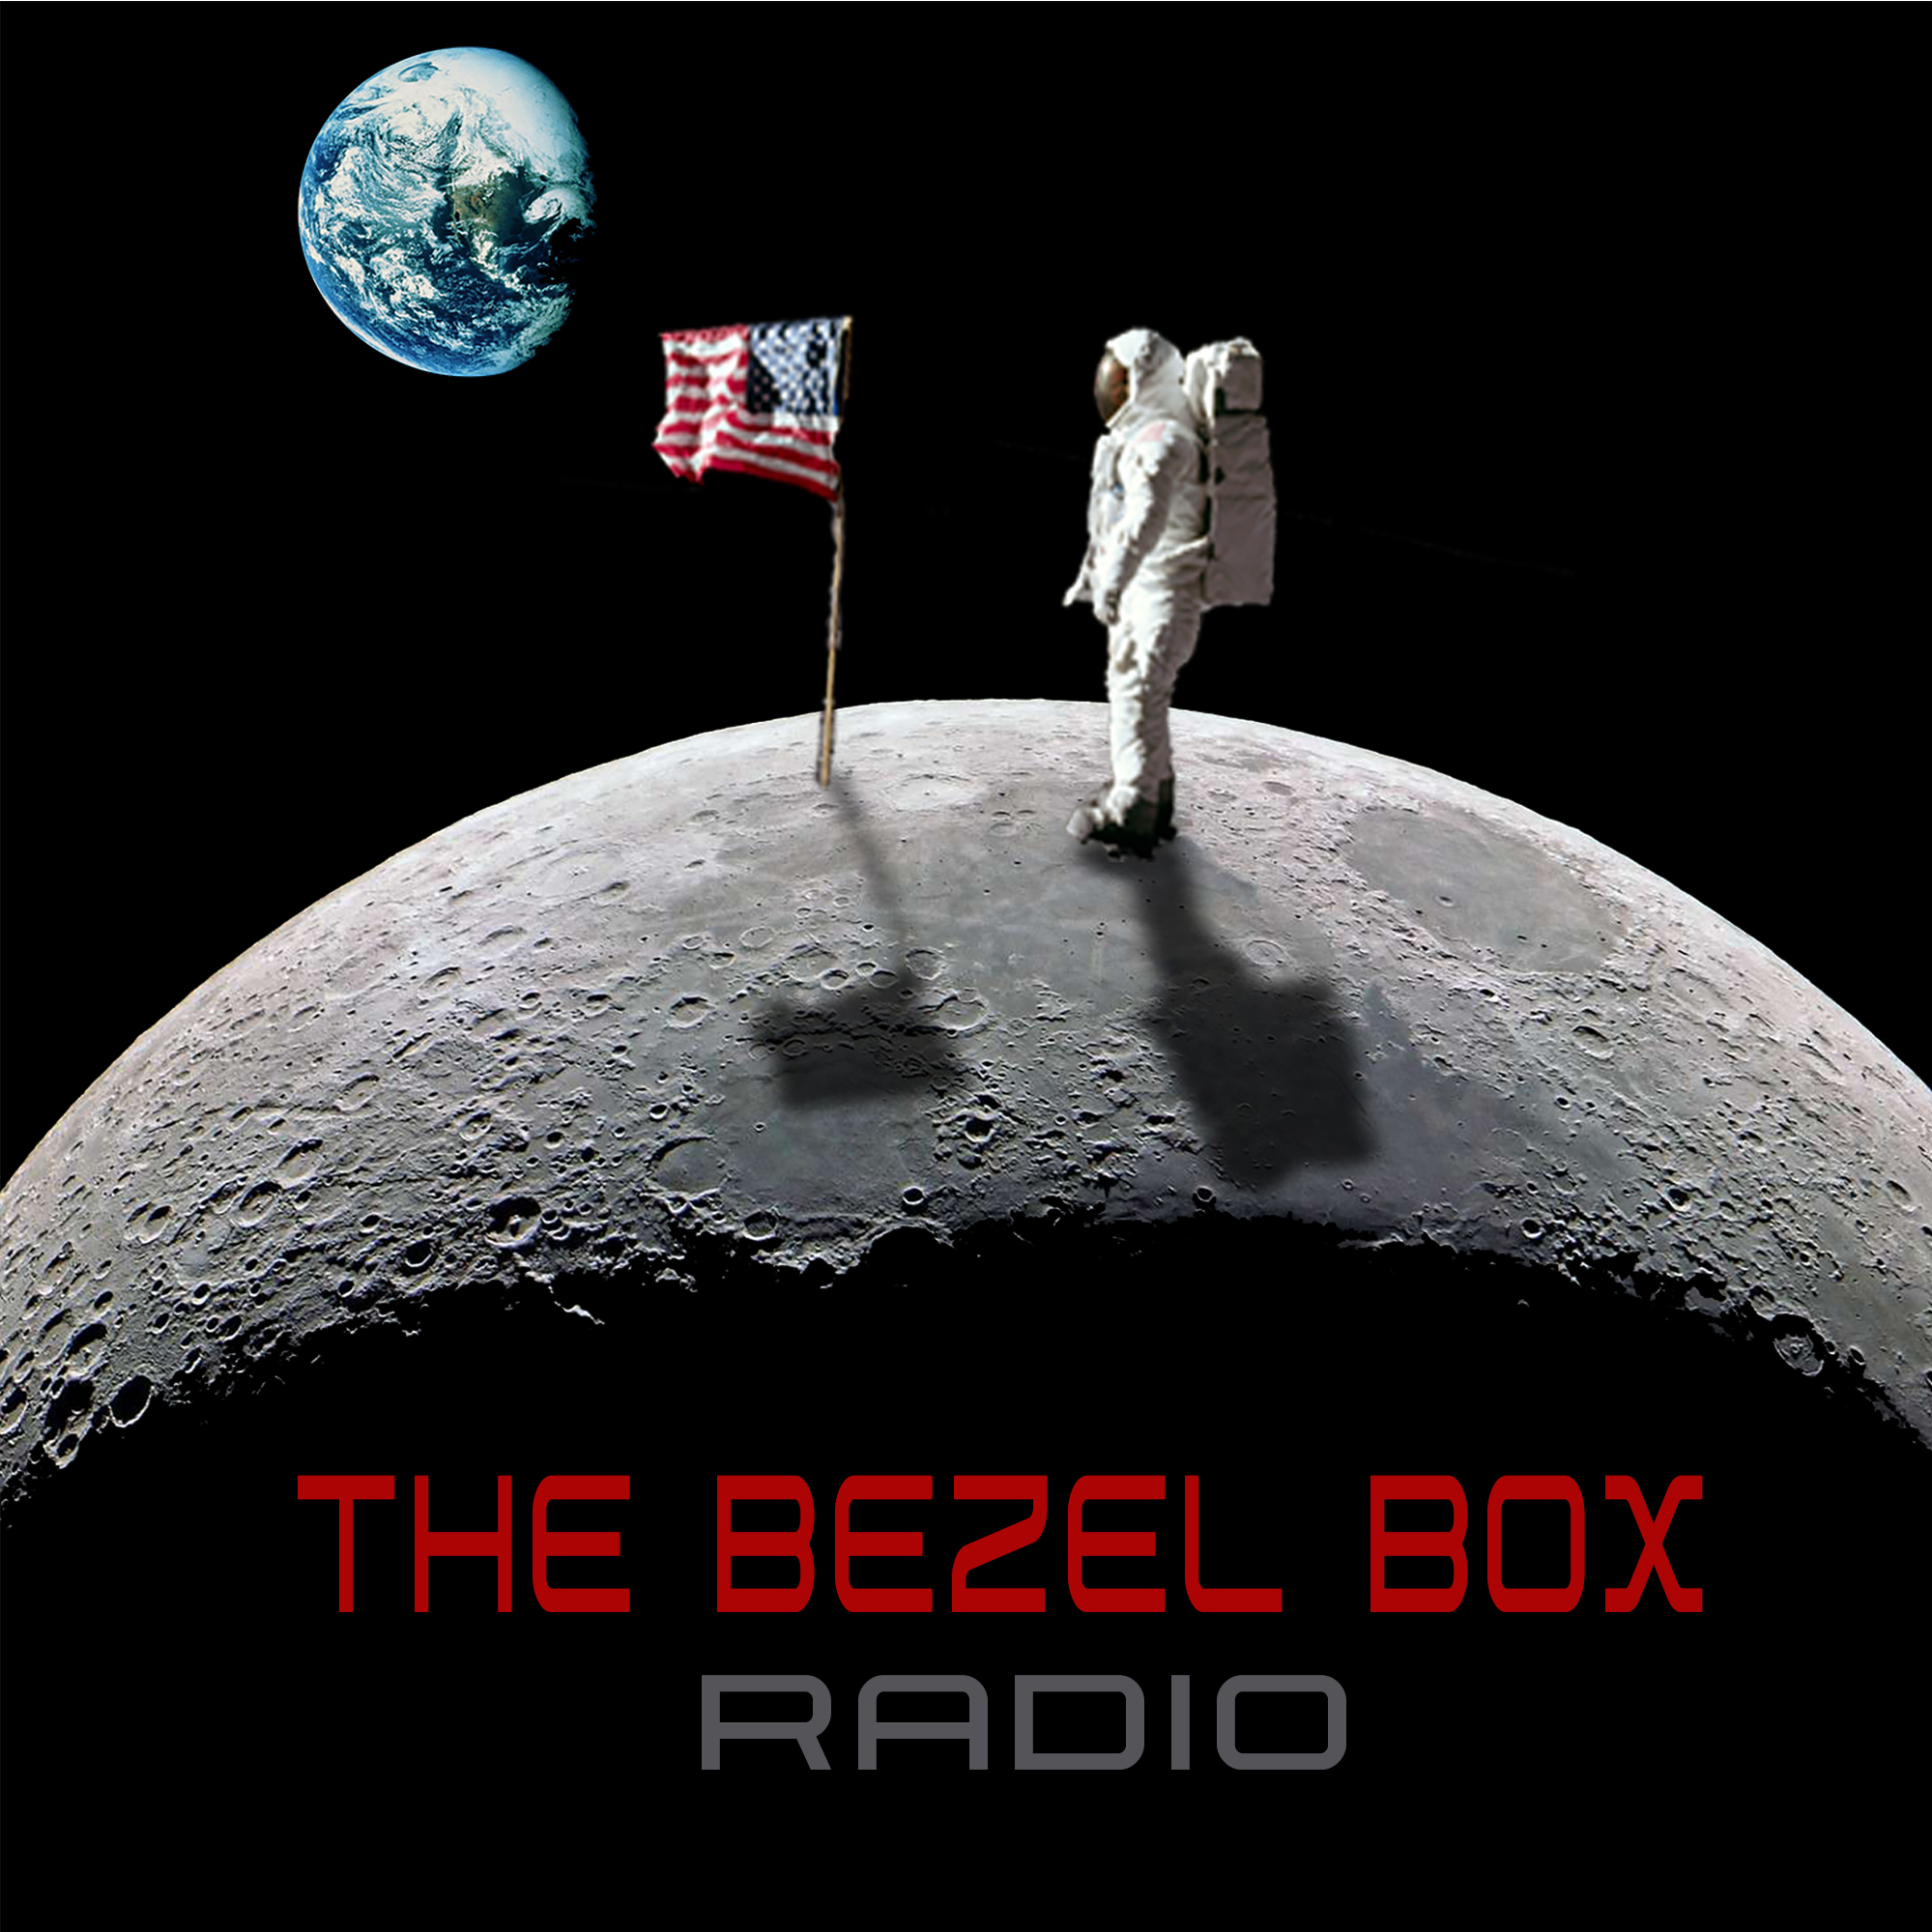 The Bezel Box Radio